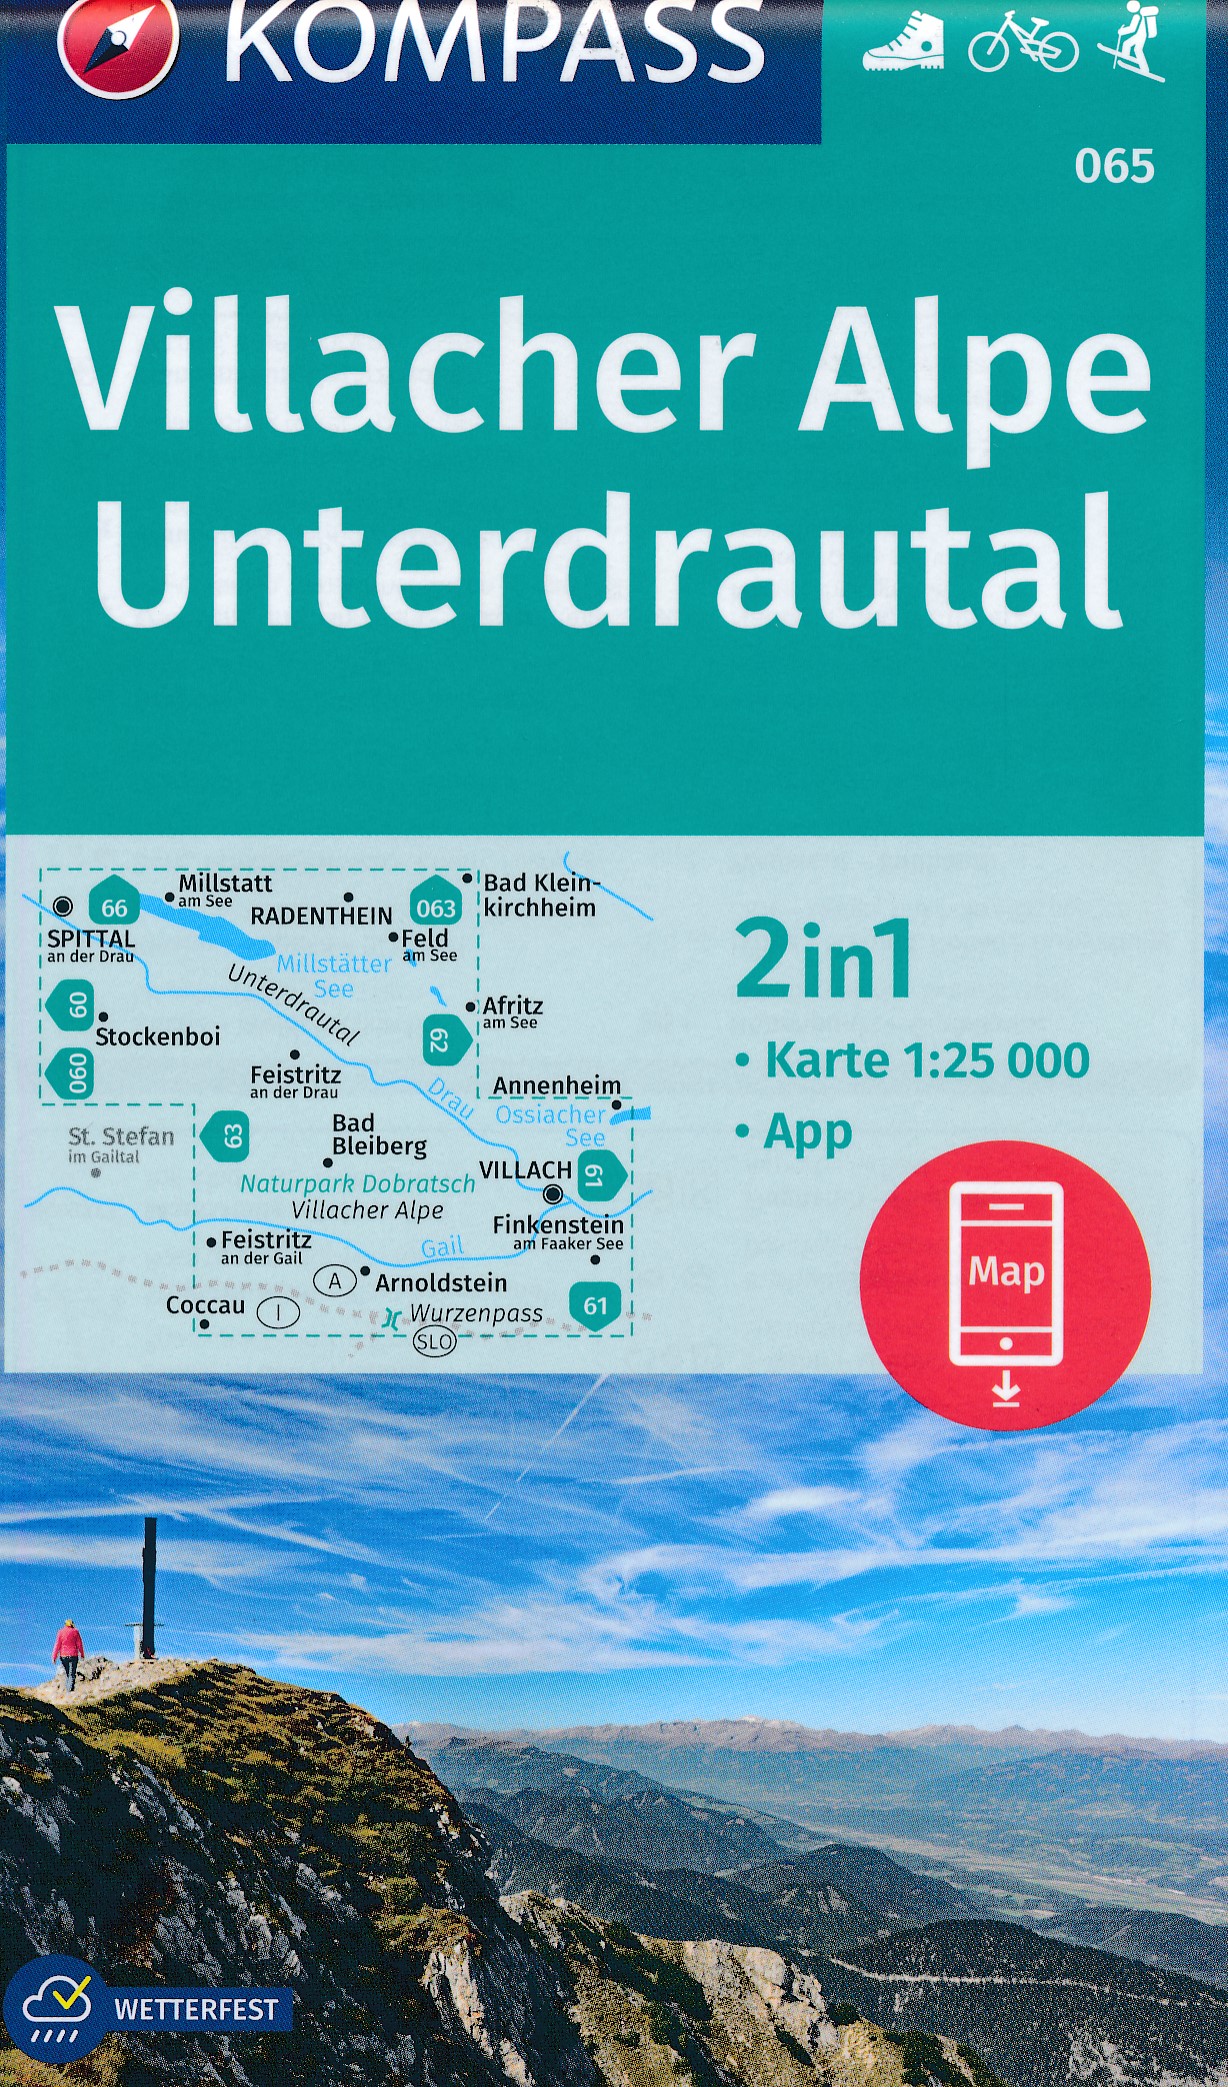 Online bestellen: Wandelkaart 065 Villacher Alpe - Unterdrautal | Kompass